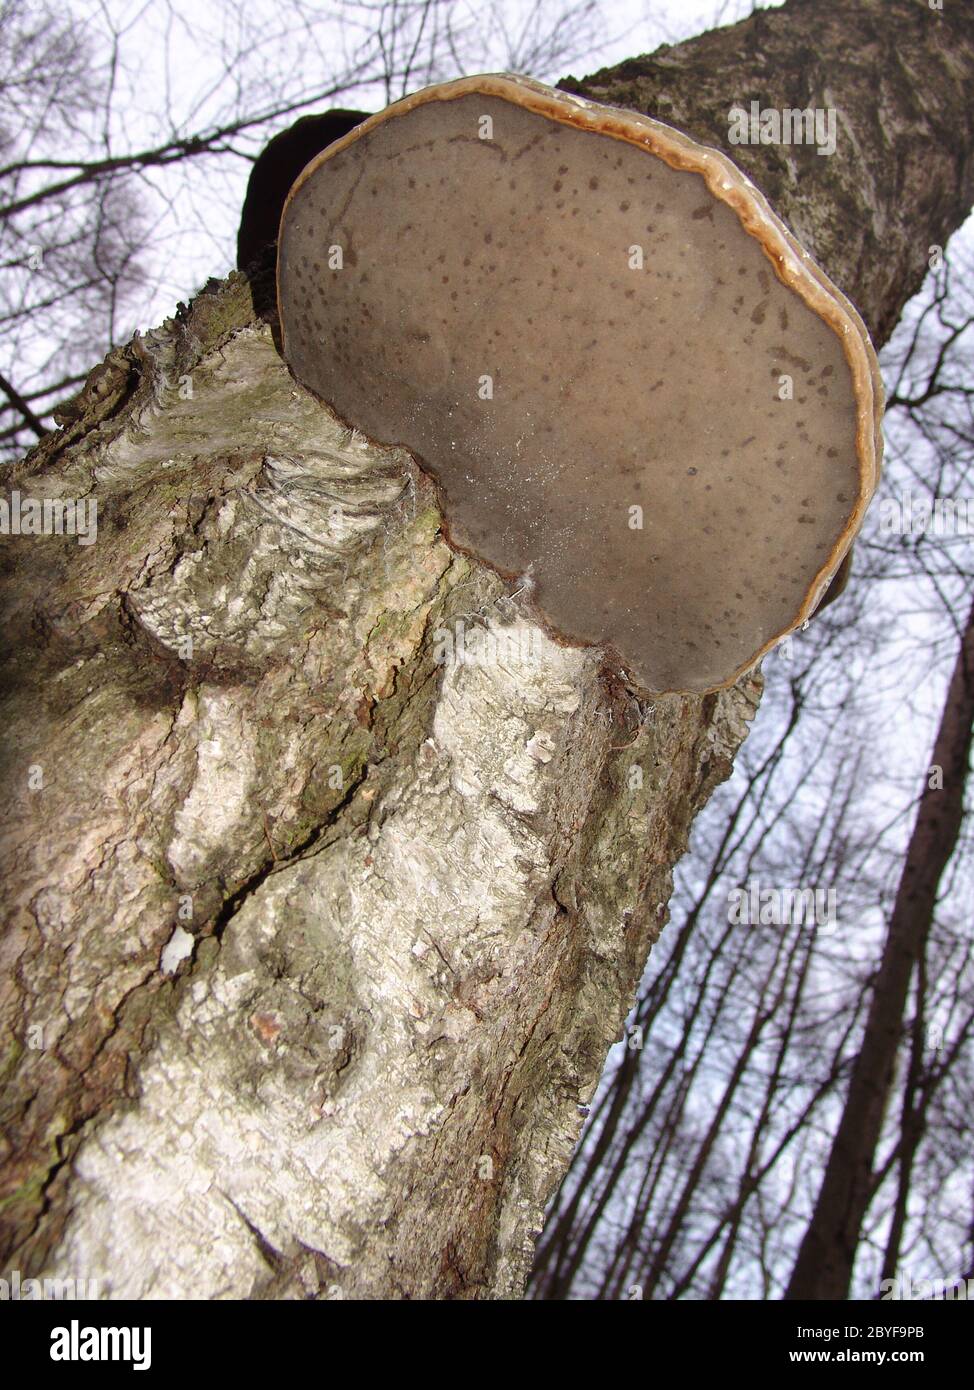 Tree sponge on birch Stock Photo